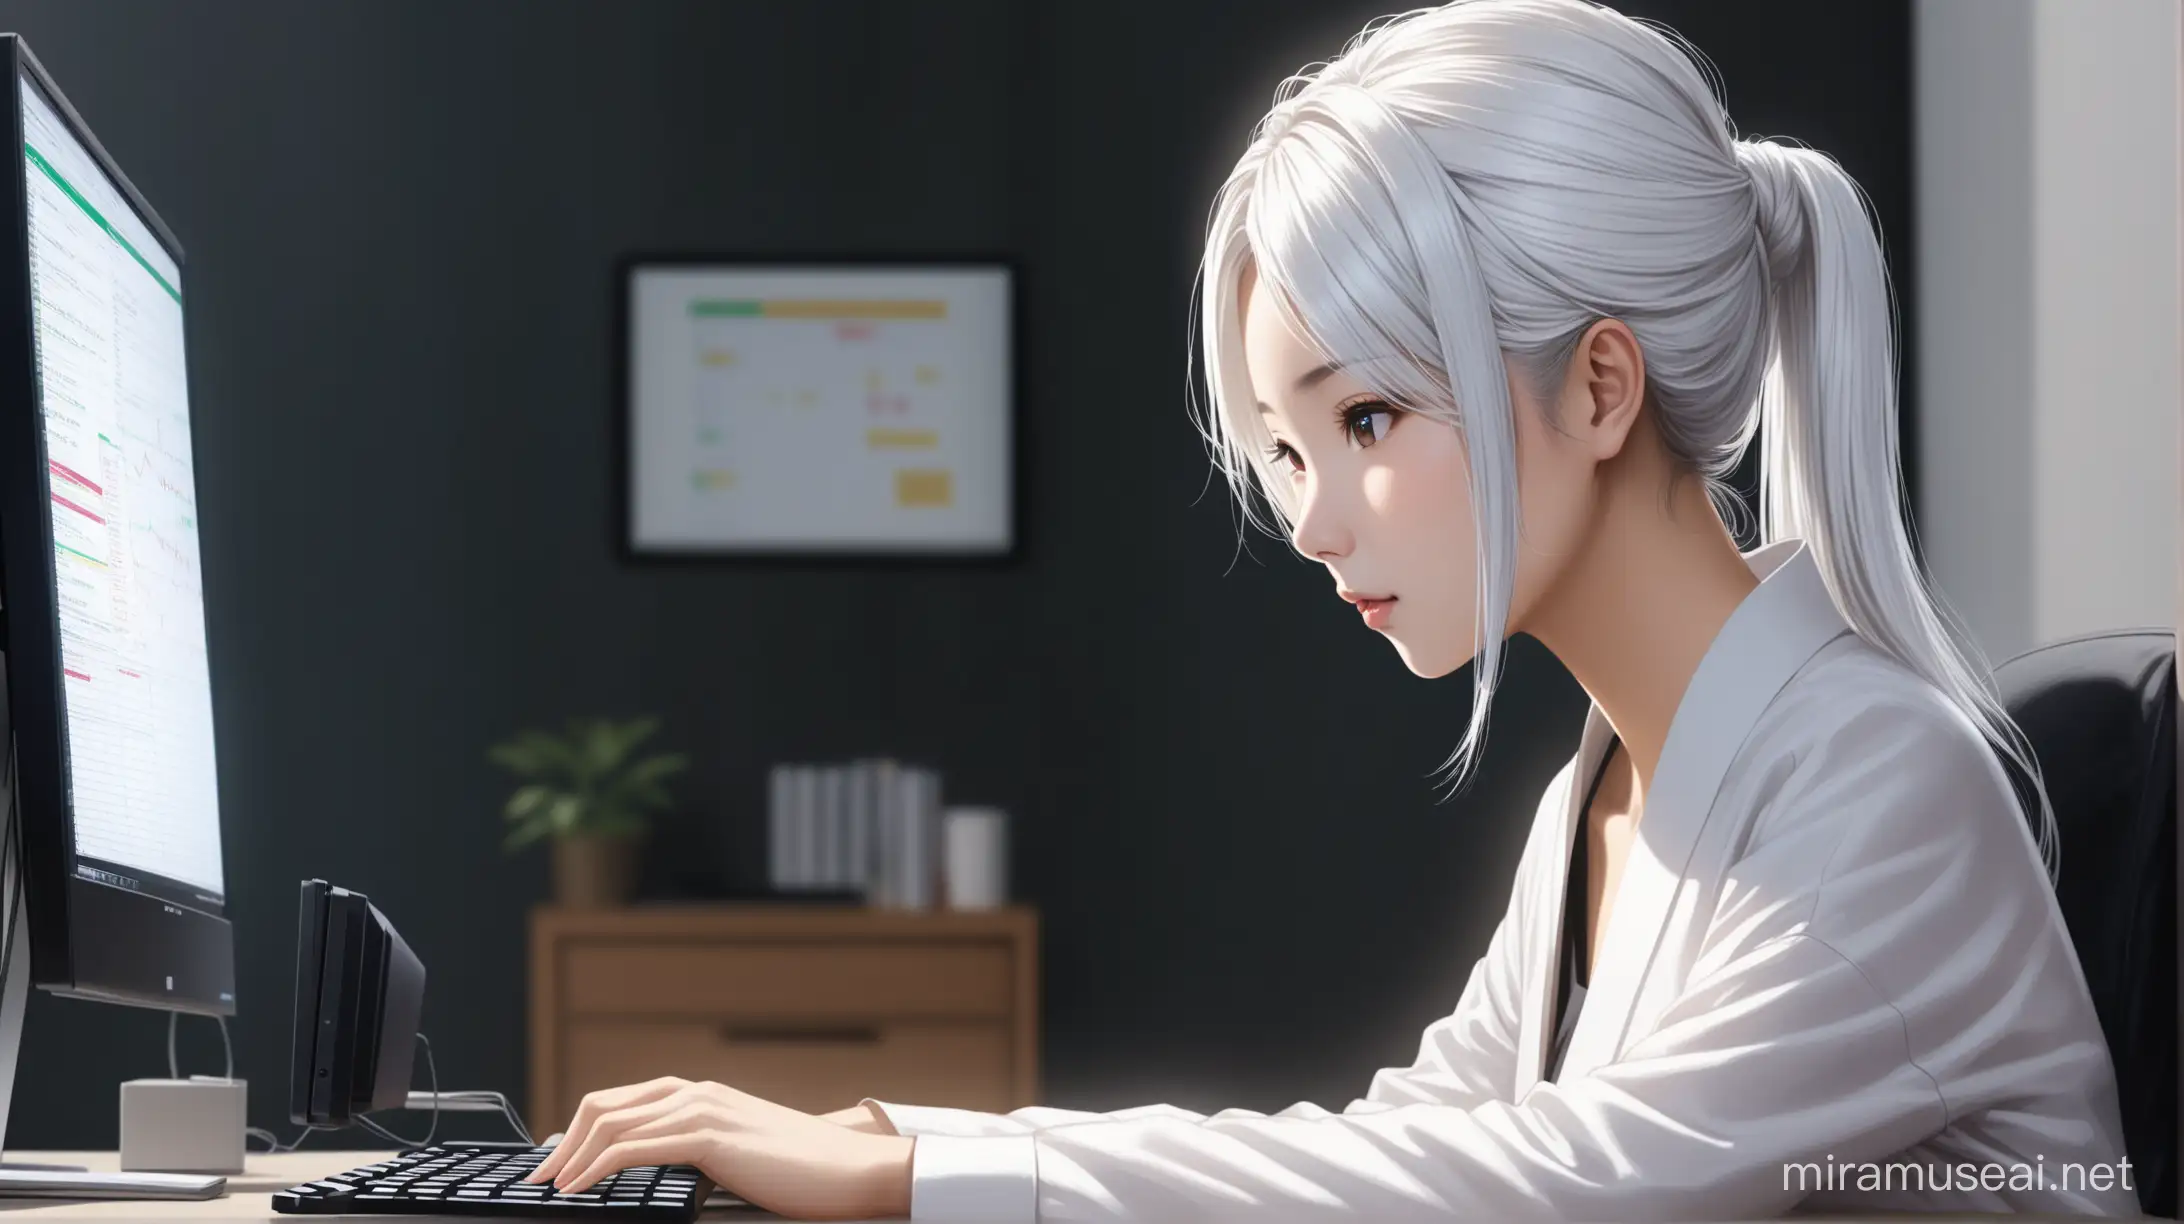 красивая девушка с белыми волосами, стиль прически карэ, азиатской внешности, торгует на фондовой бирже через свой домашний компьютер.  реалистичность, 4к